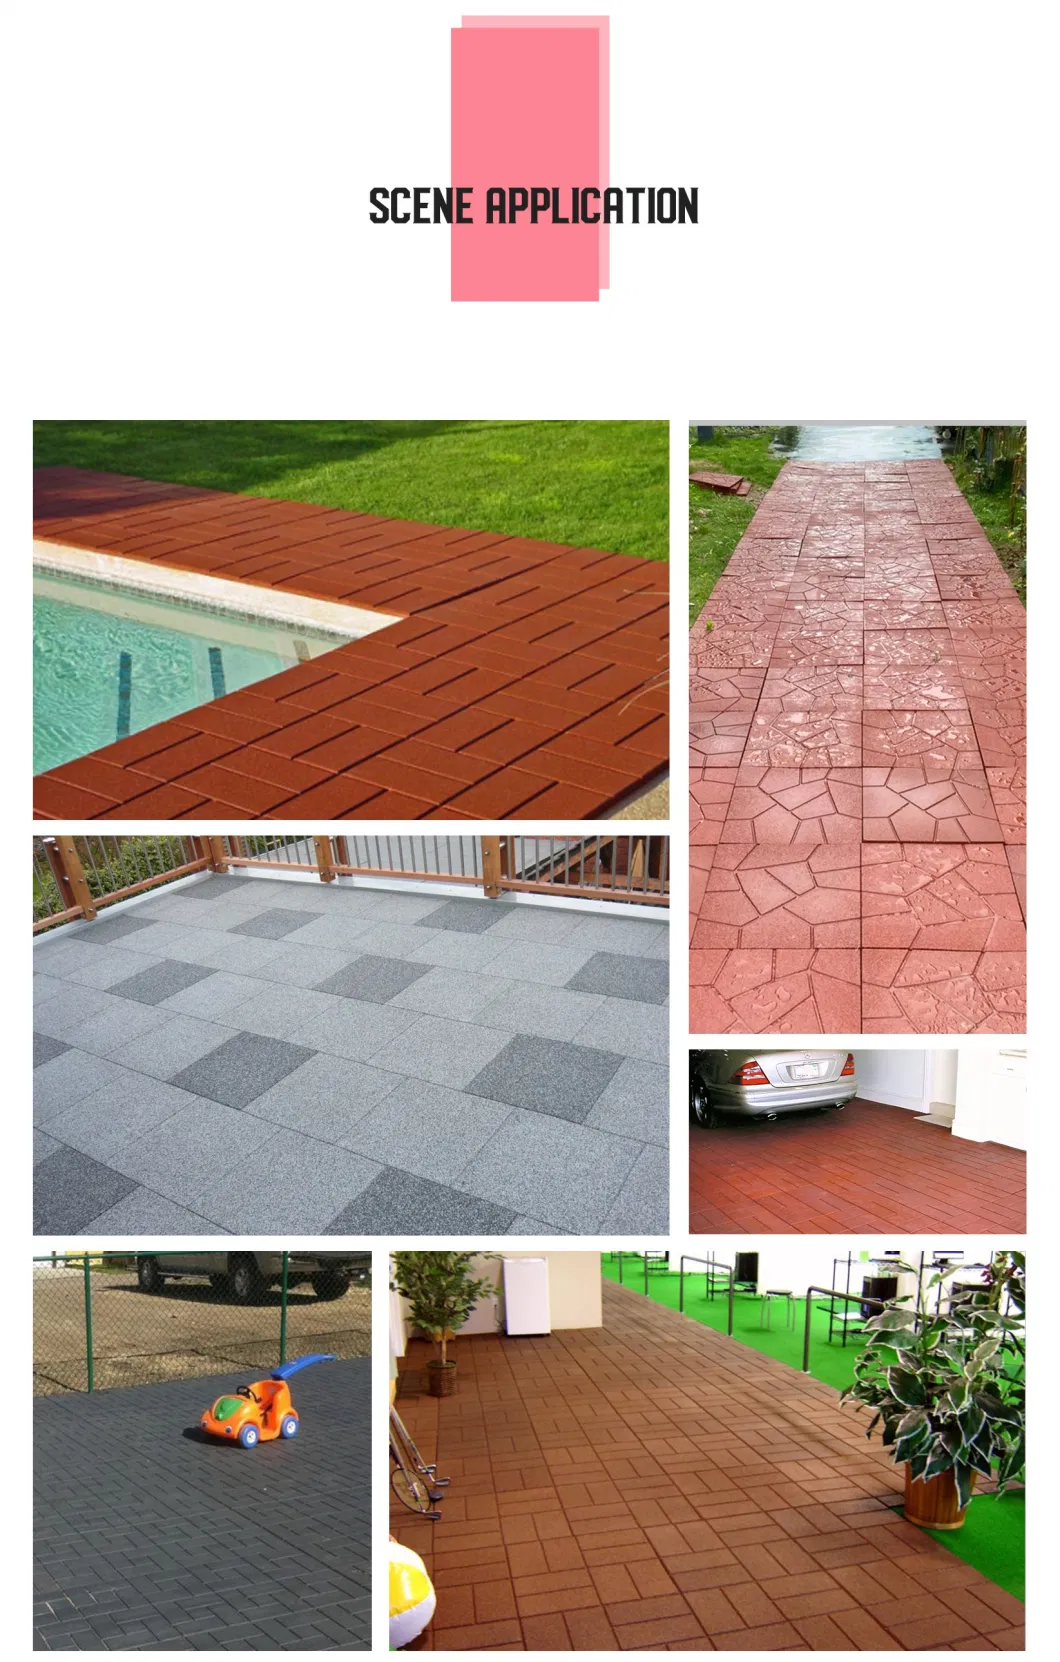 400X400mm Brick Rubber Floor Tiles New Design Garden Floor Tiles, Outdoor Basketball Court Flooring for Garden